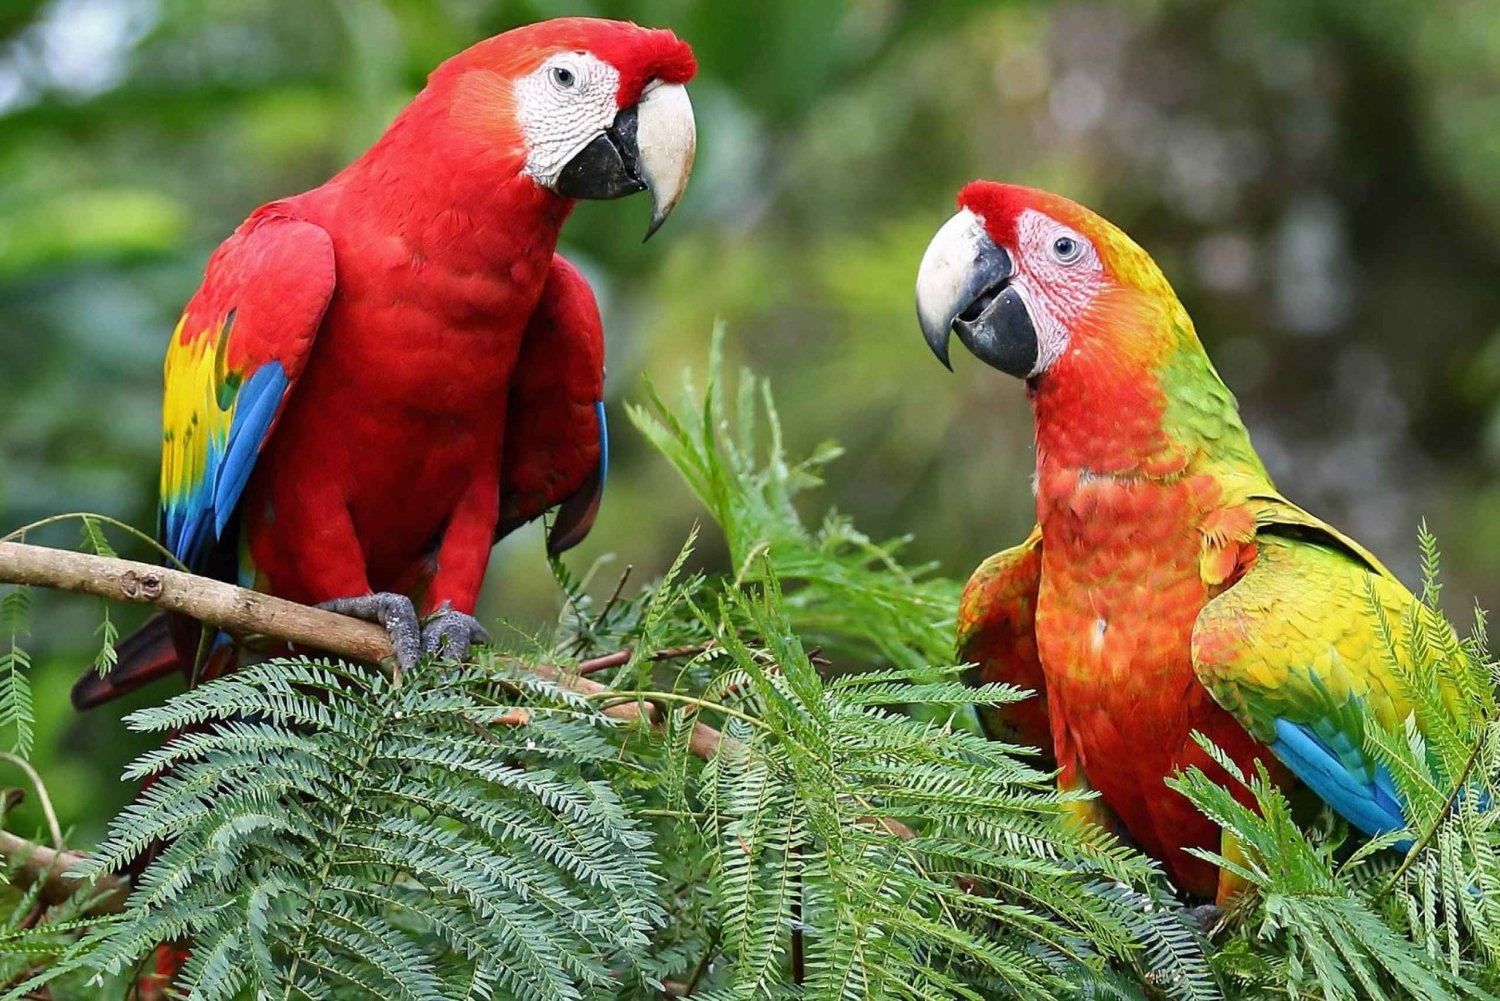 Uvita: Araras-vermelhas no Parque Nacional Marino Ballena Papagaios